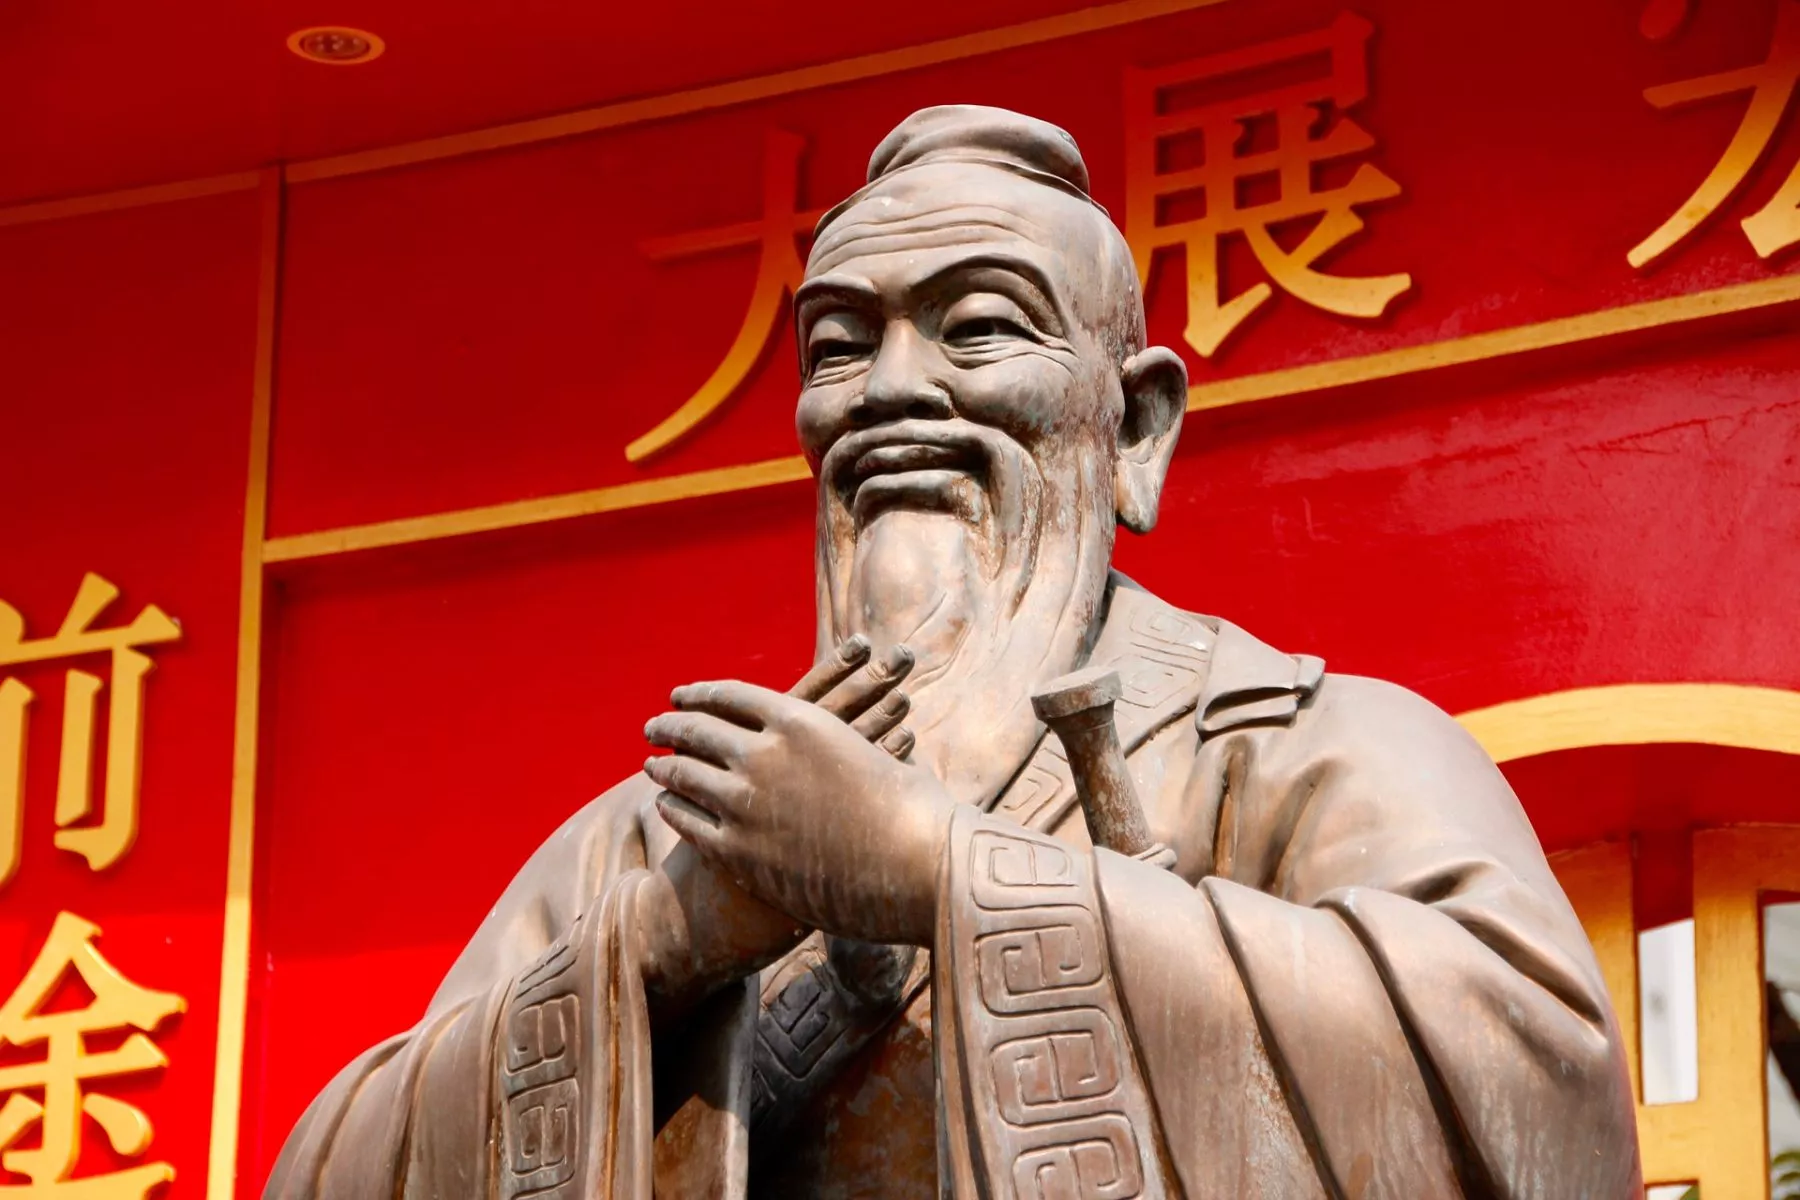 “China zal digitale valuta binnenkort lanceren”, aldus Jack Lee